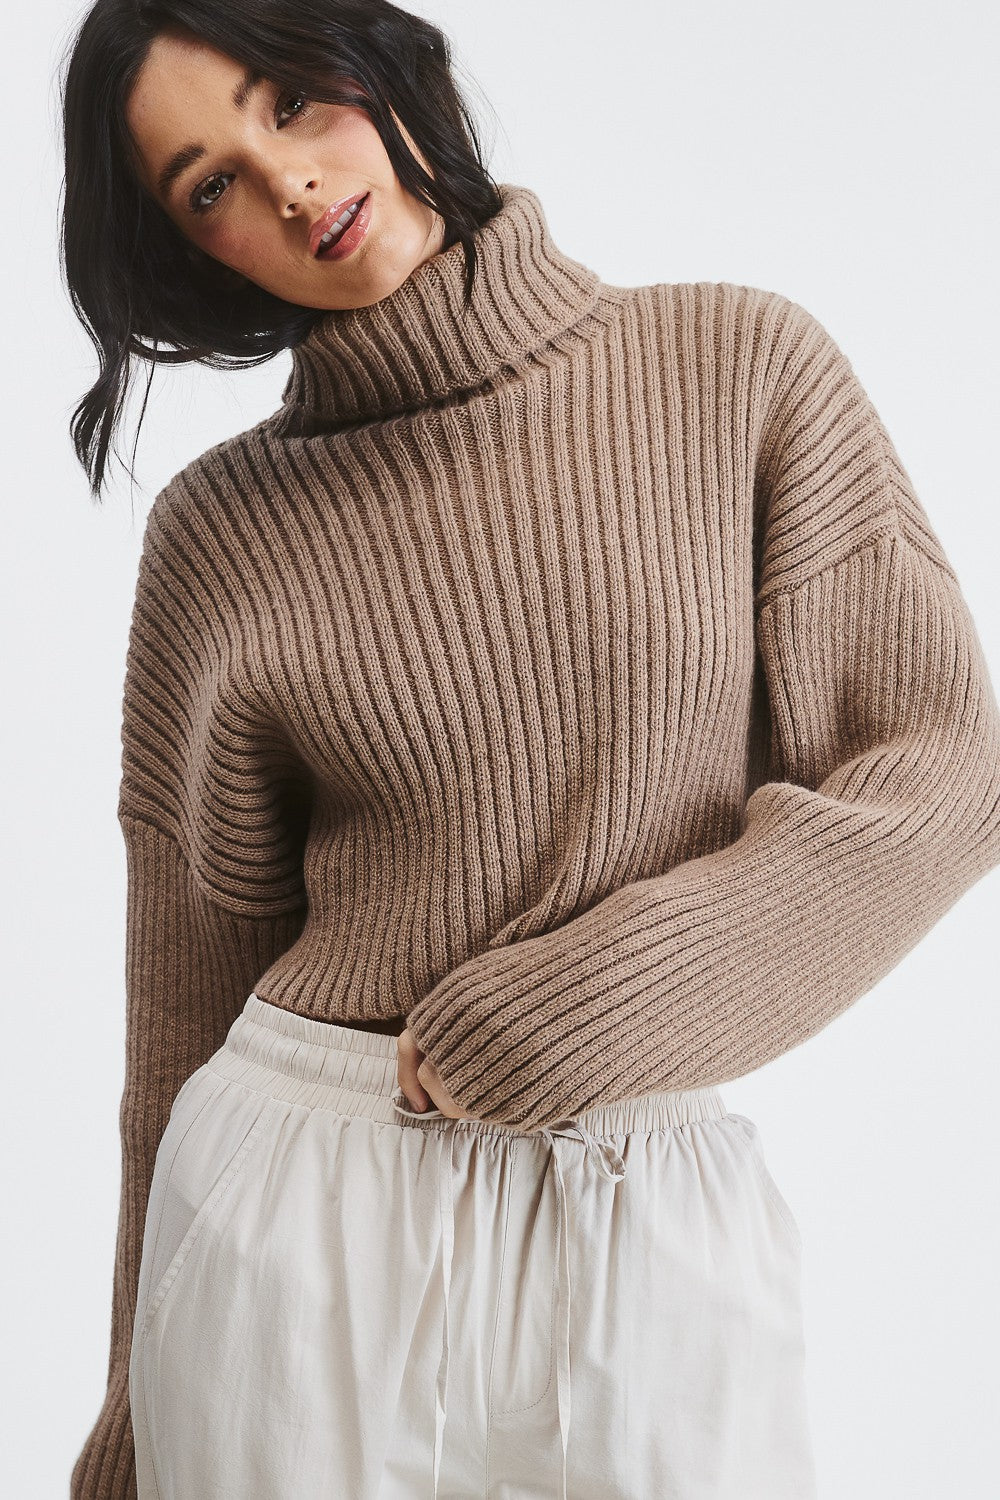 warm & cozy sweater